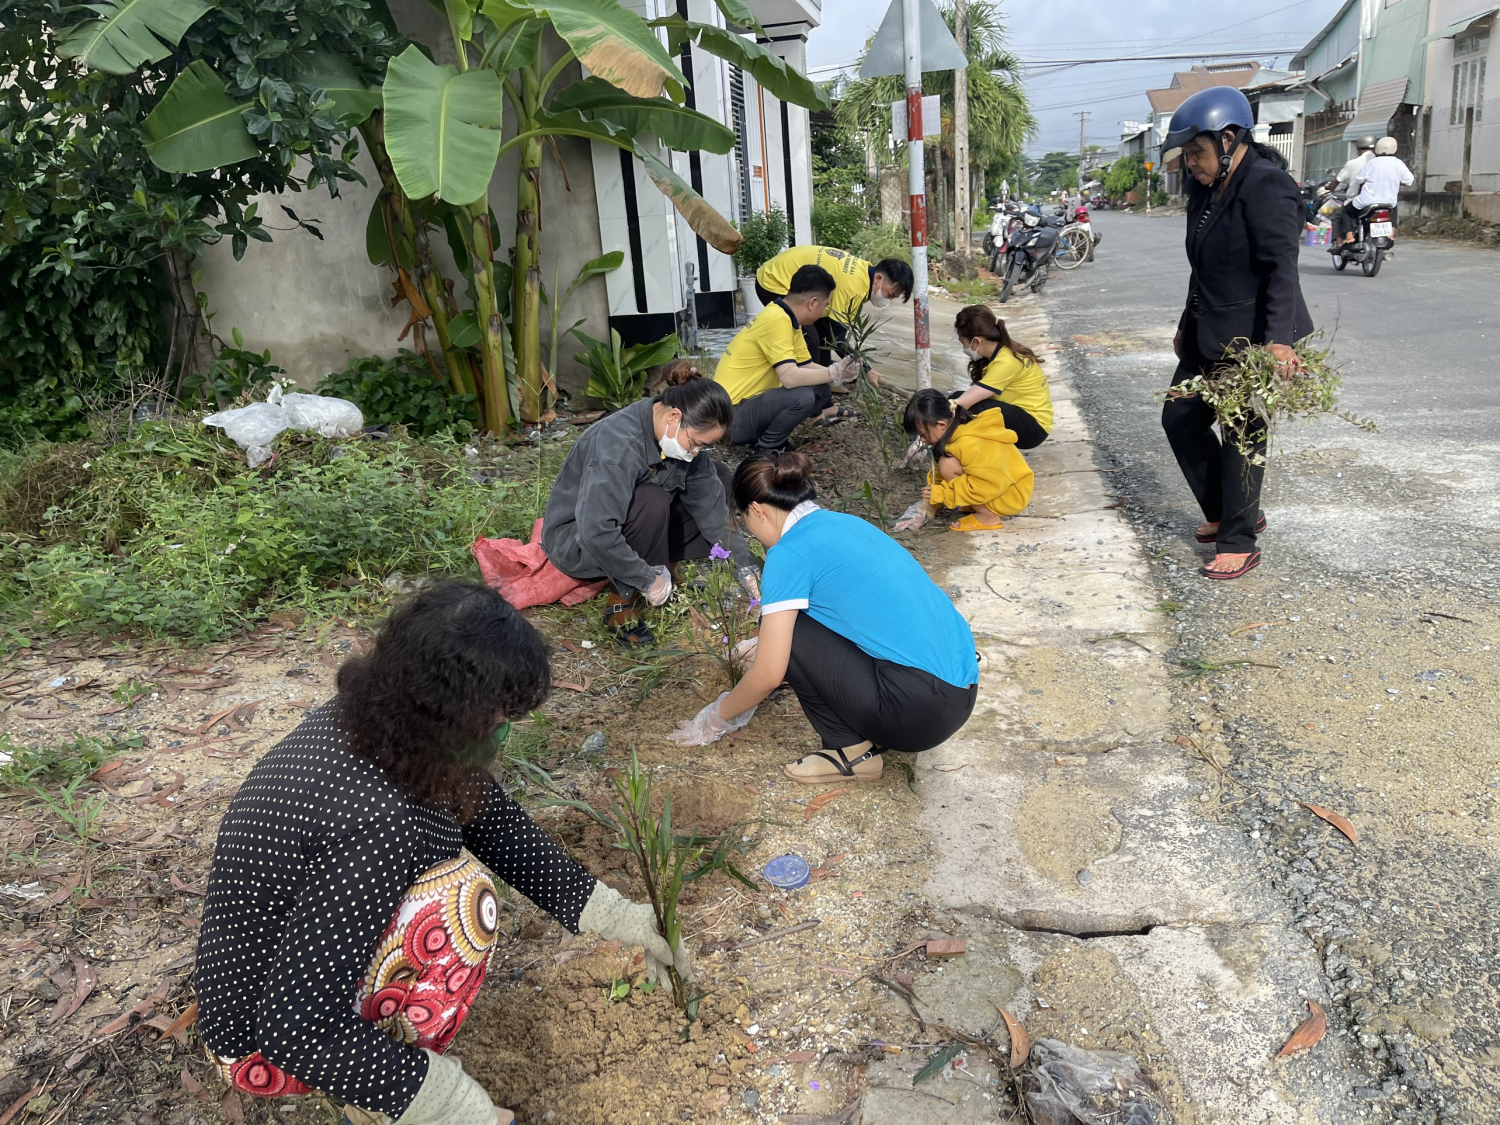 Hội Liên hiệp phụ nữ Phường Ninh Thạnh phối hợp cùng với các thành viên của Công ty TNHH Pháp Lý Bất Động Sản Tây Ninh tổ chức ra quân dọn dẹp vệ sinh và trồng hoa.